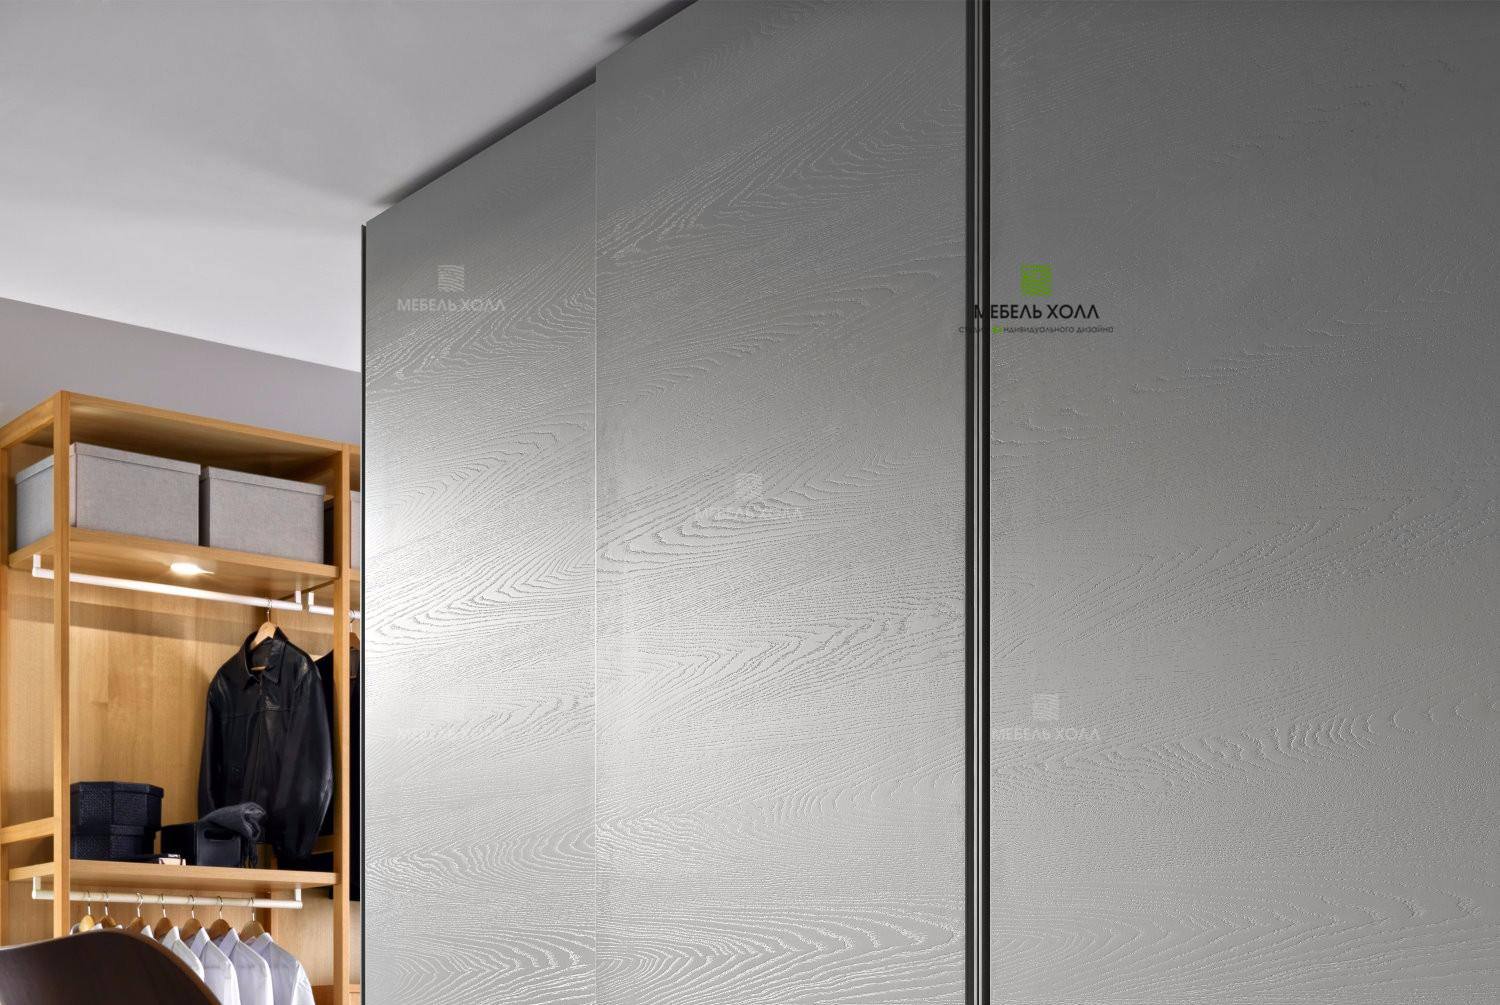 Гардеробный шкаф состоит из двух совмещенных отсеков, каждый из которых имеет раздвижные двери с системой Hettich, материал - ДСП Cleaf, ручки-профиль